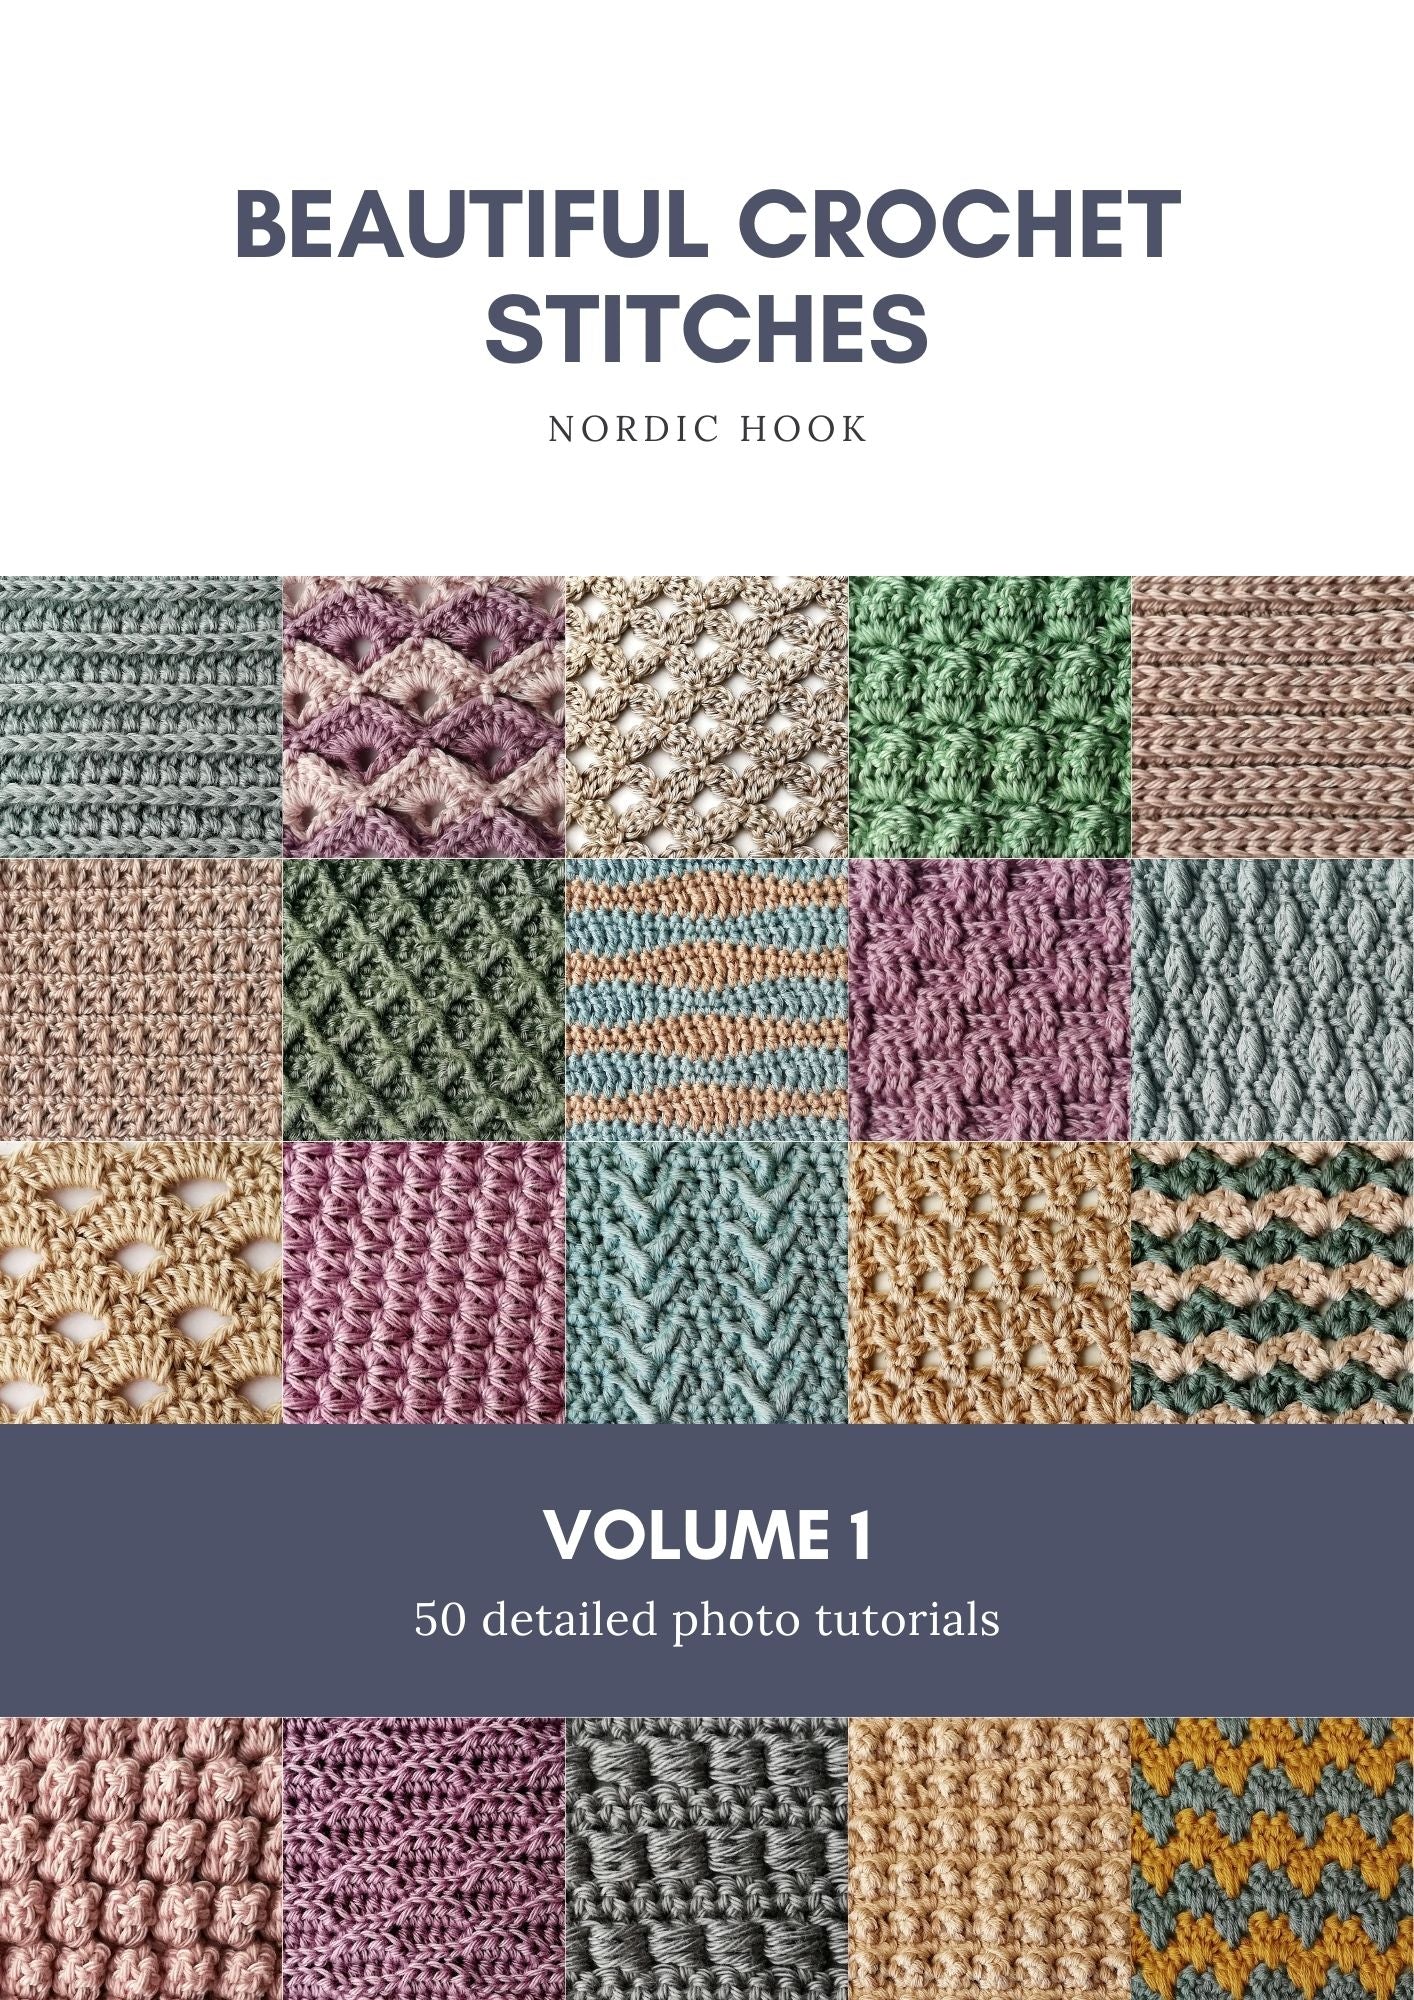 Beautiful crochet stitches Volume 1